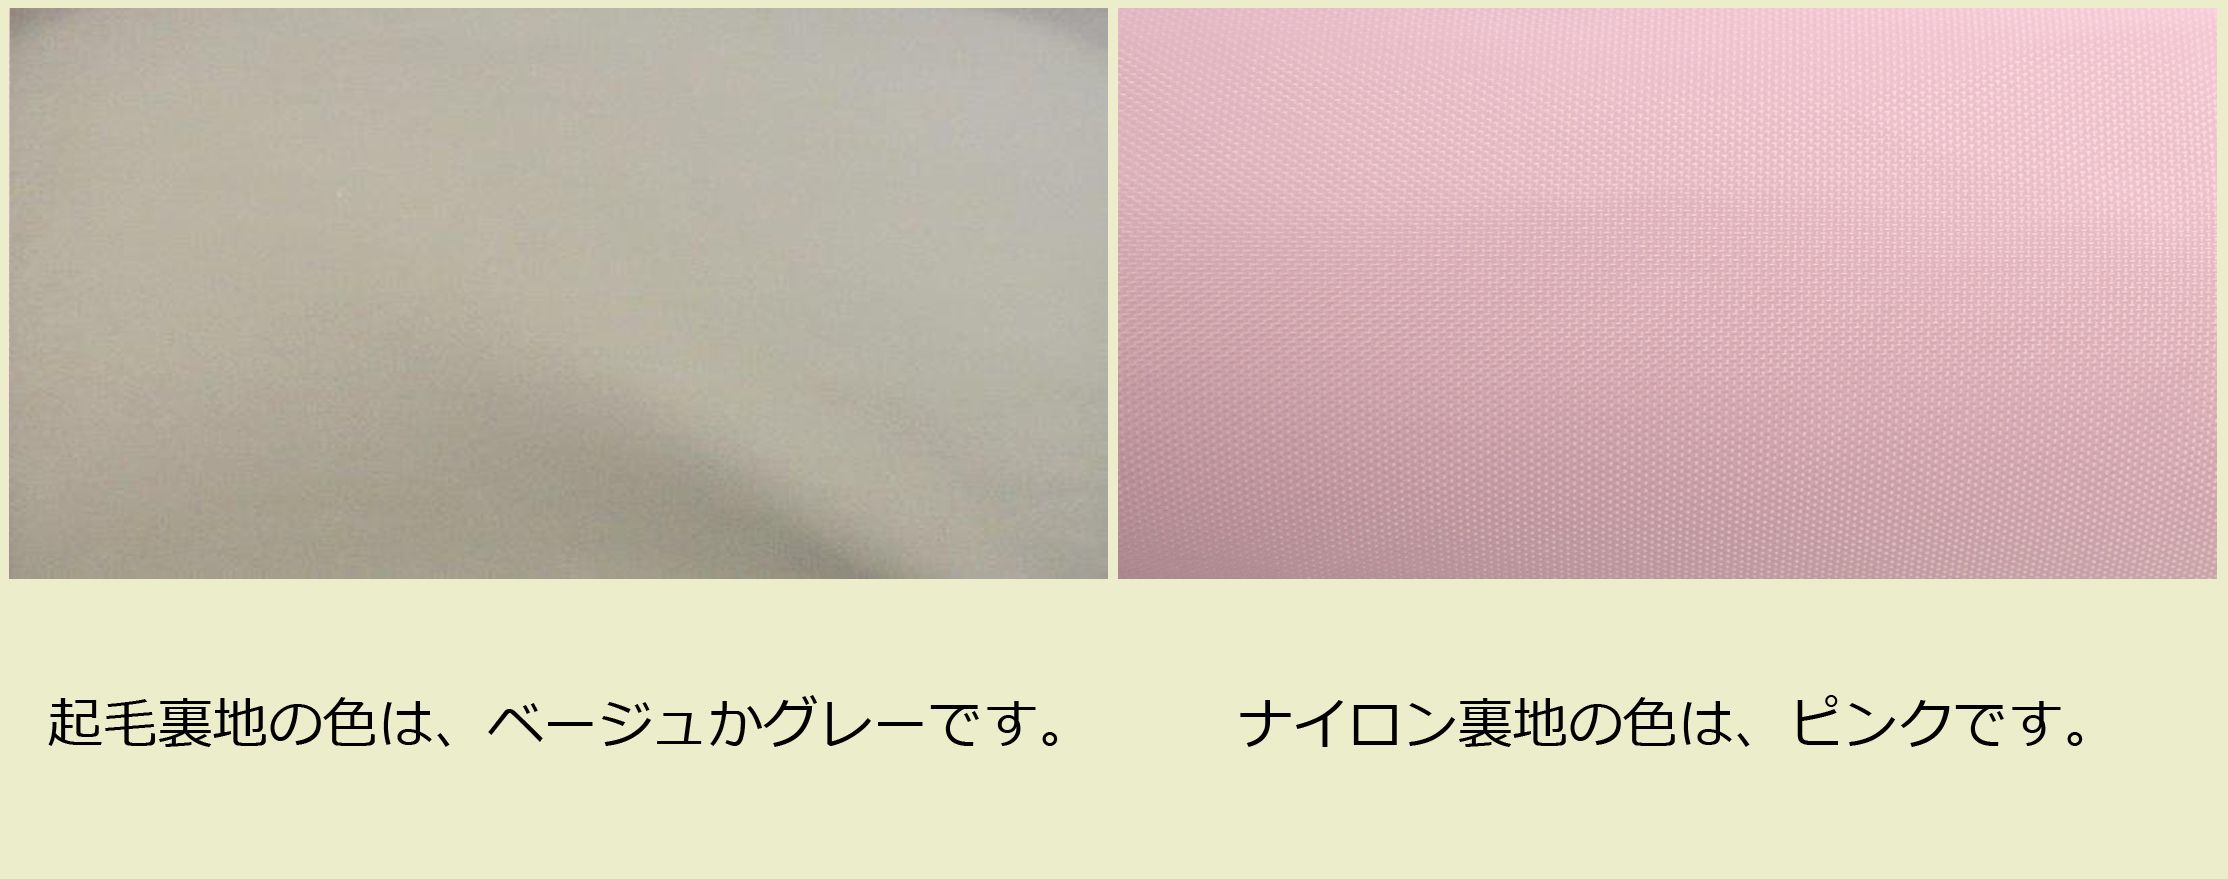 画像: 2コンパート ブリーフケース「Deniro/wf」（オーボエ・フルート・クラリネット対応）オフホワイト / ピンク